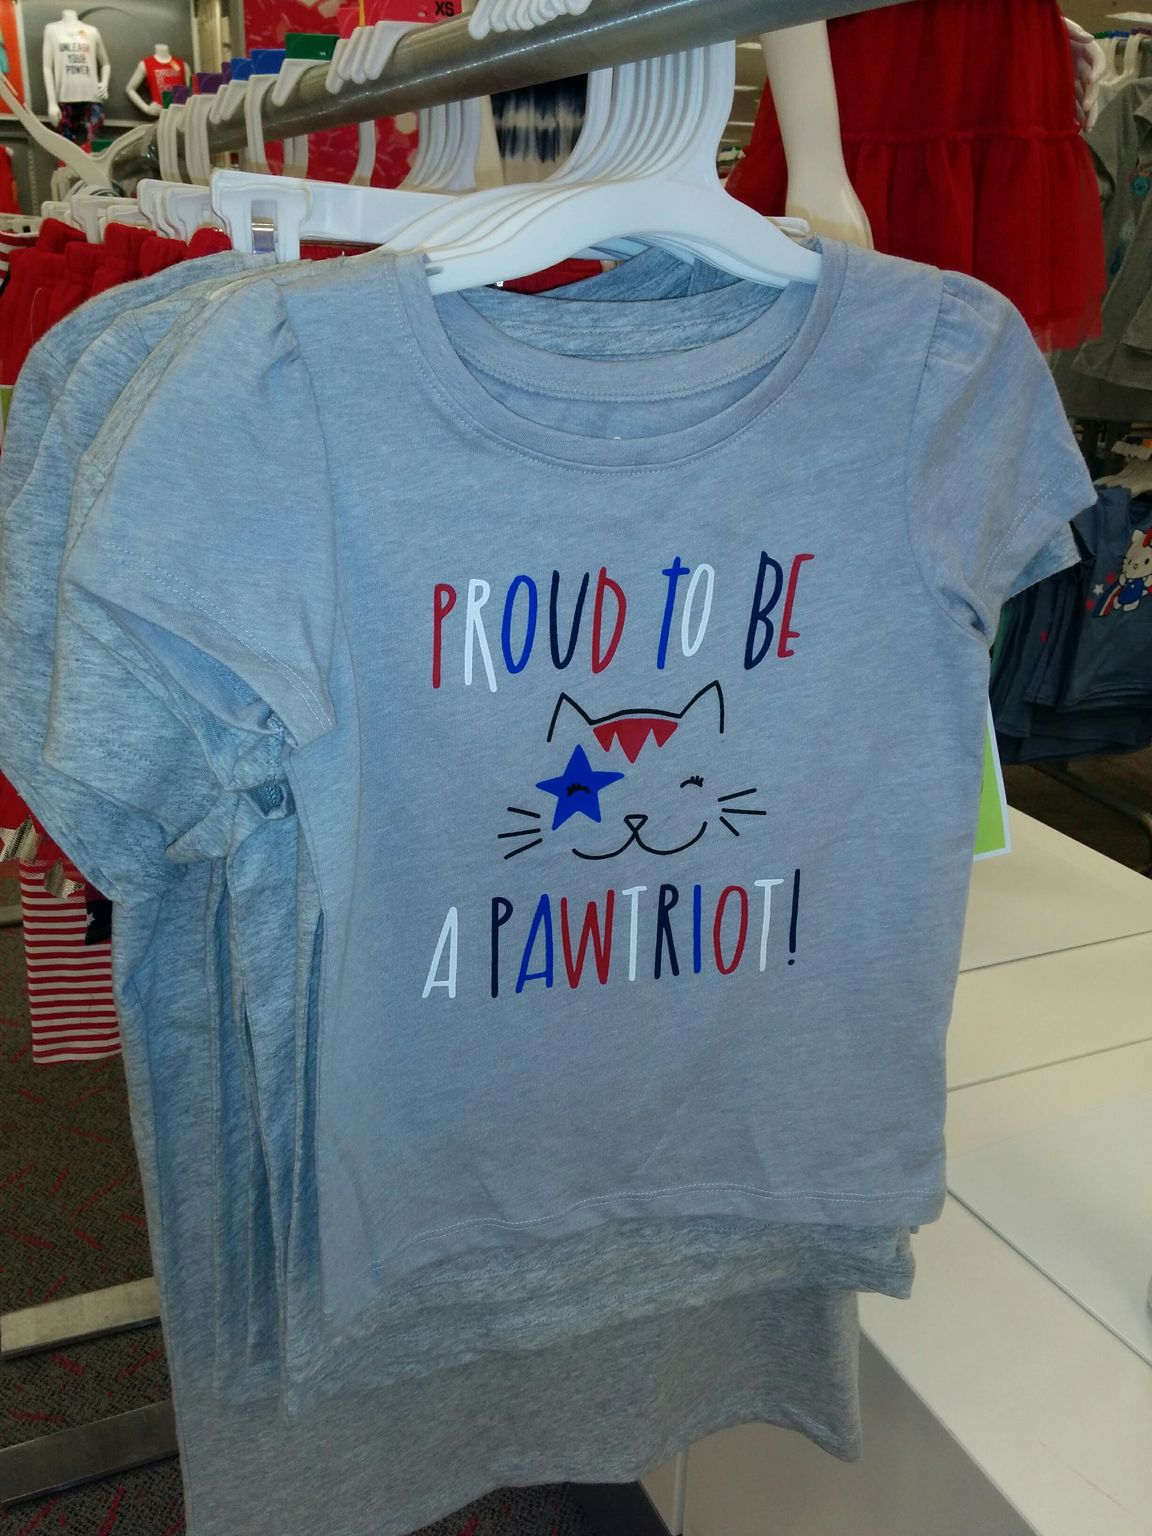 Un t-shirt pour ceux qui aiment les USA et les chats : un jeu de mot entre patriot et paw (patte).